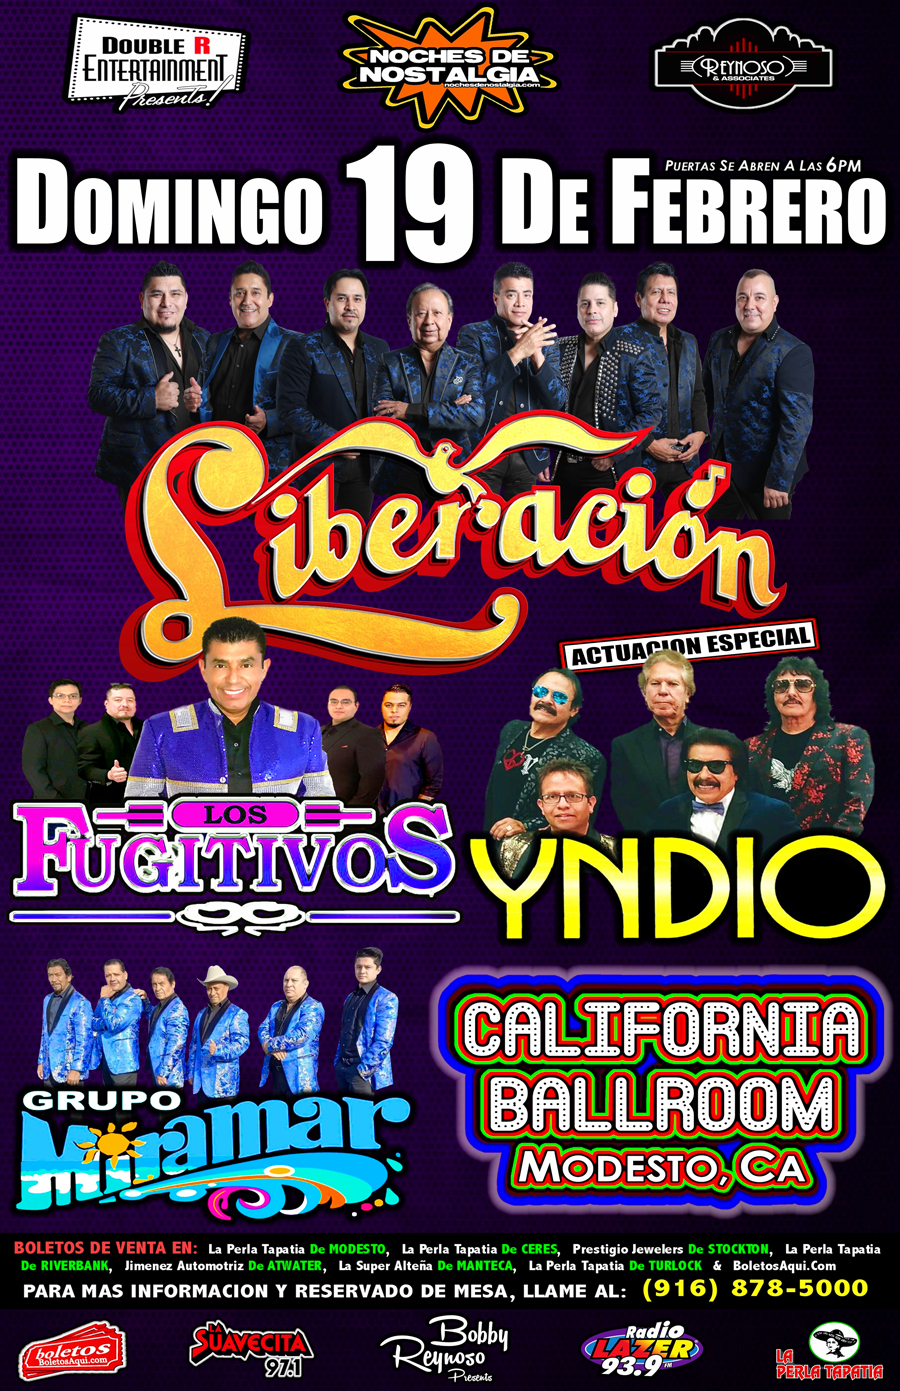 Liberacion, Los Fugitivos, Grupo Miramar y la actuacion especial de Yndio. – California Ballroom de Modesto, California.